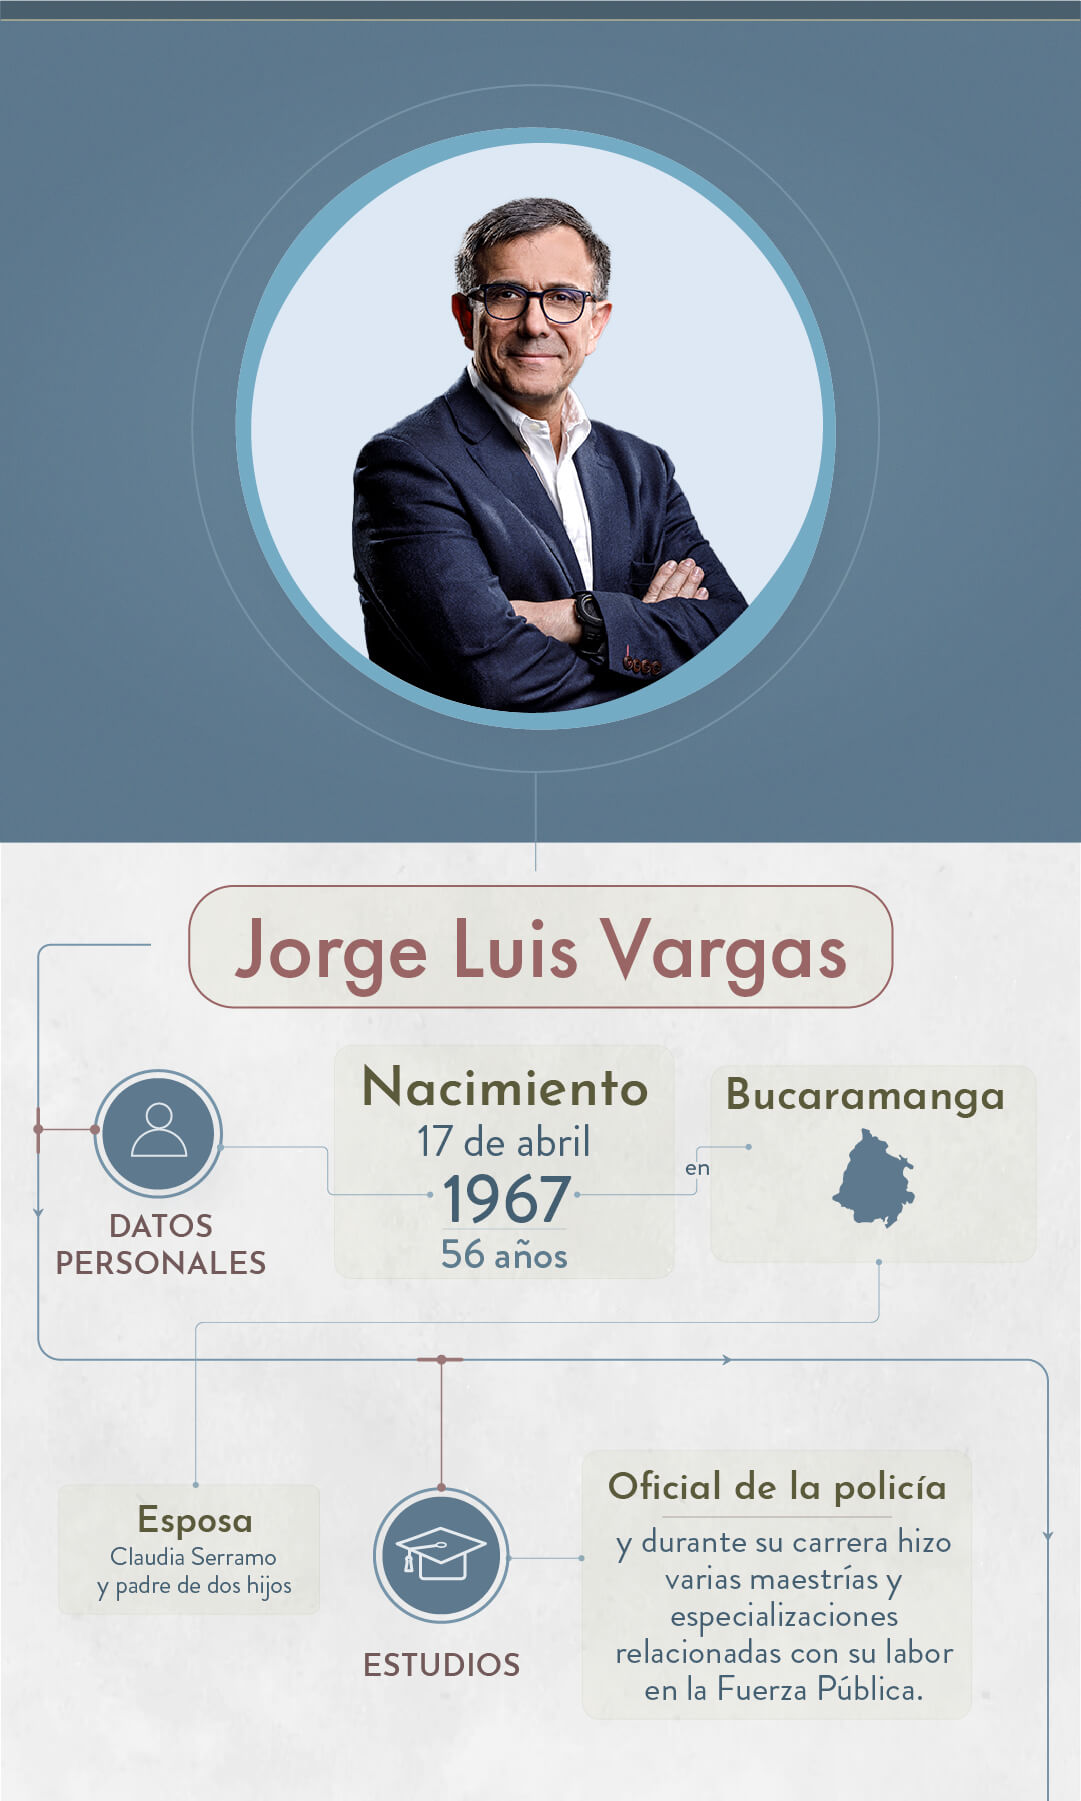 Elecciones 2023: estos son los candidatos a dirigir la ciudad de Bogotá - Especial Semana